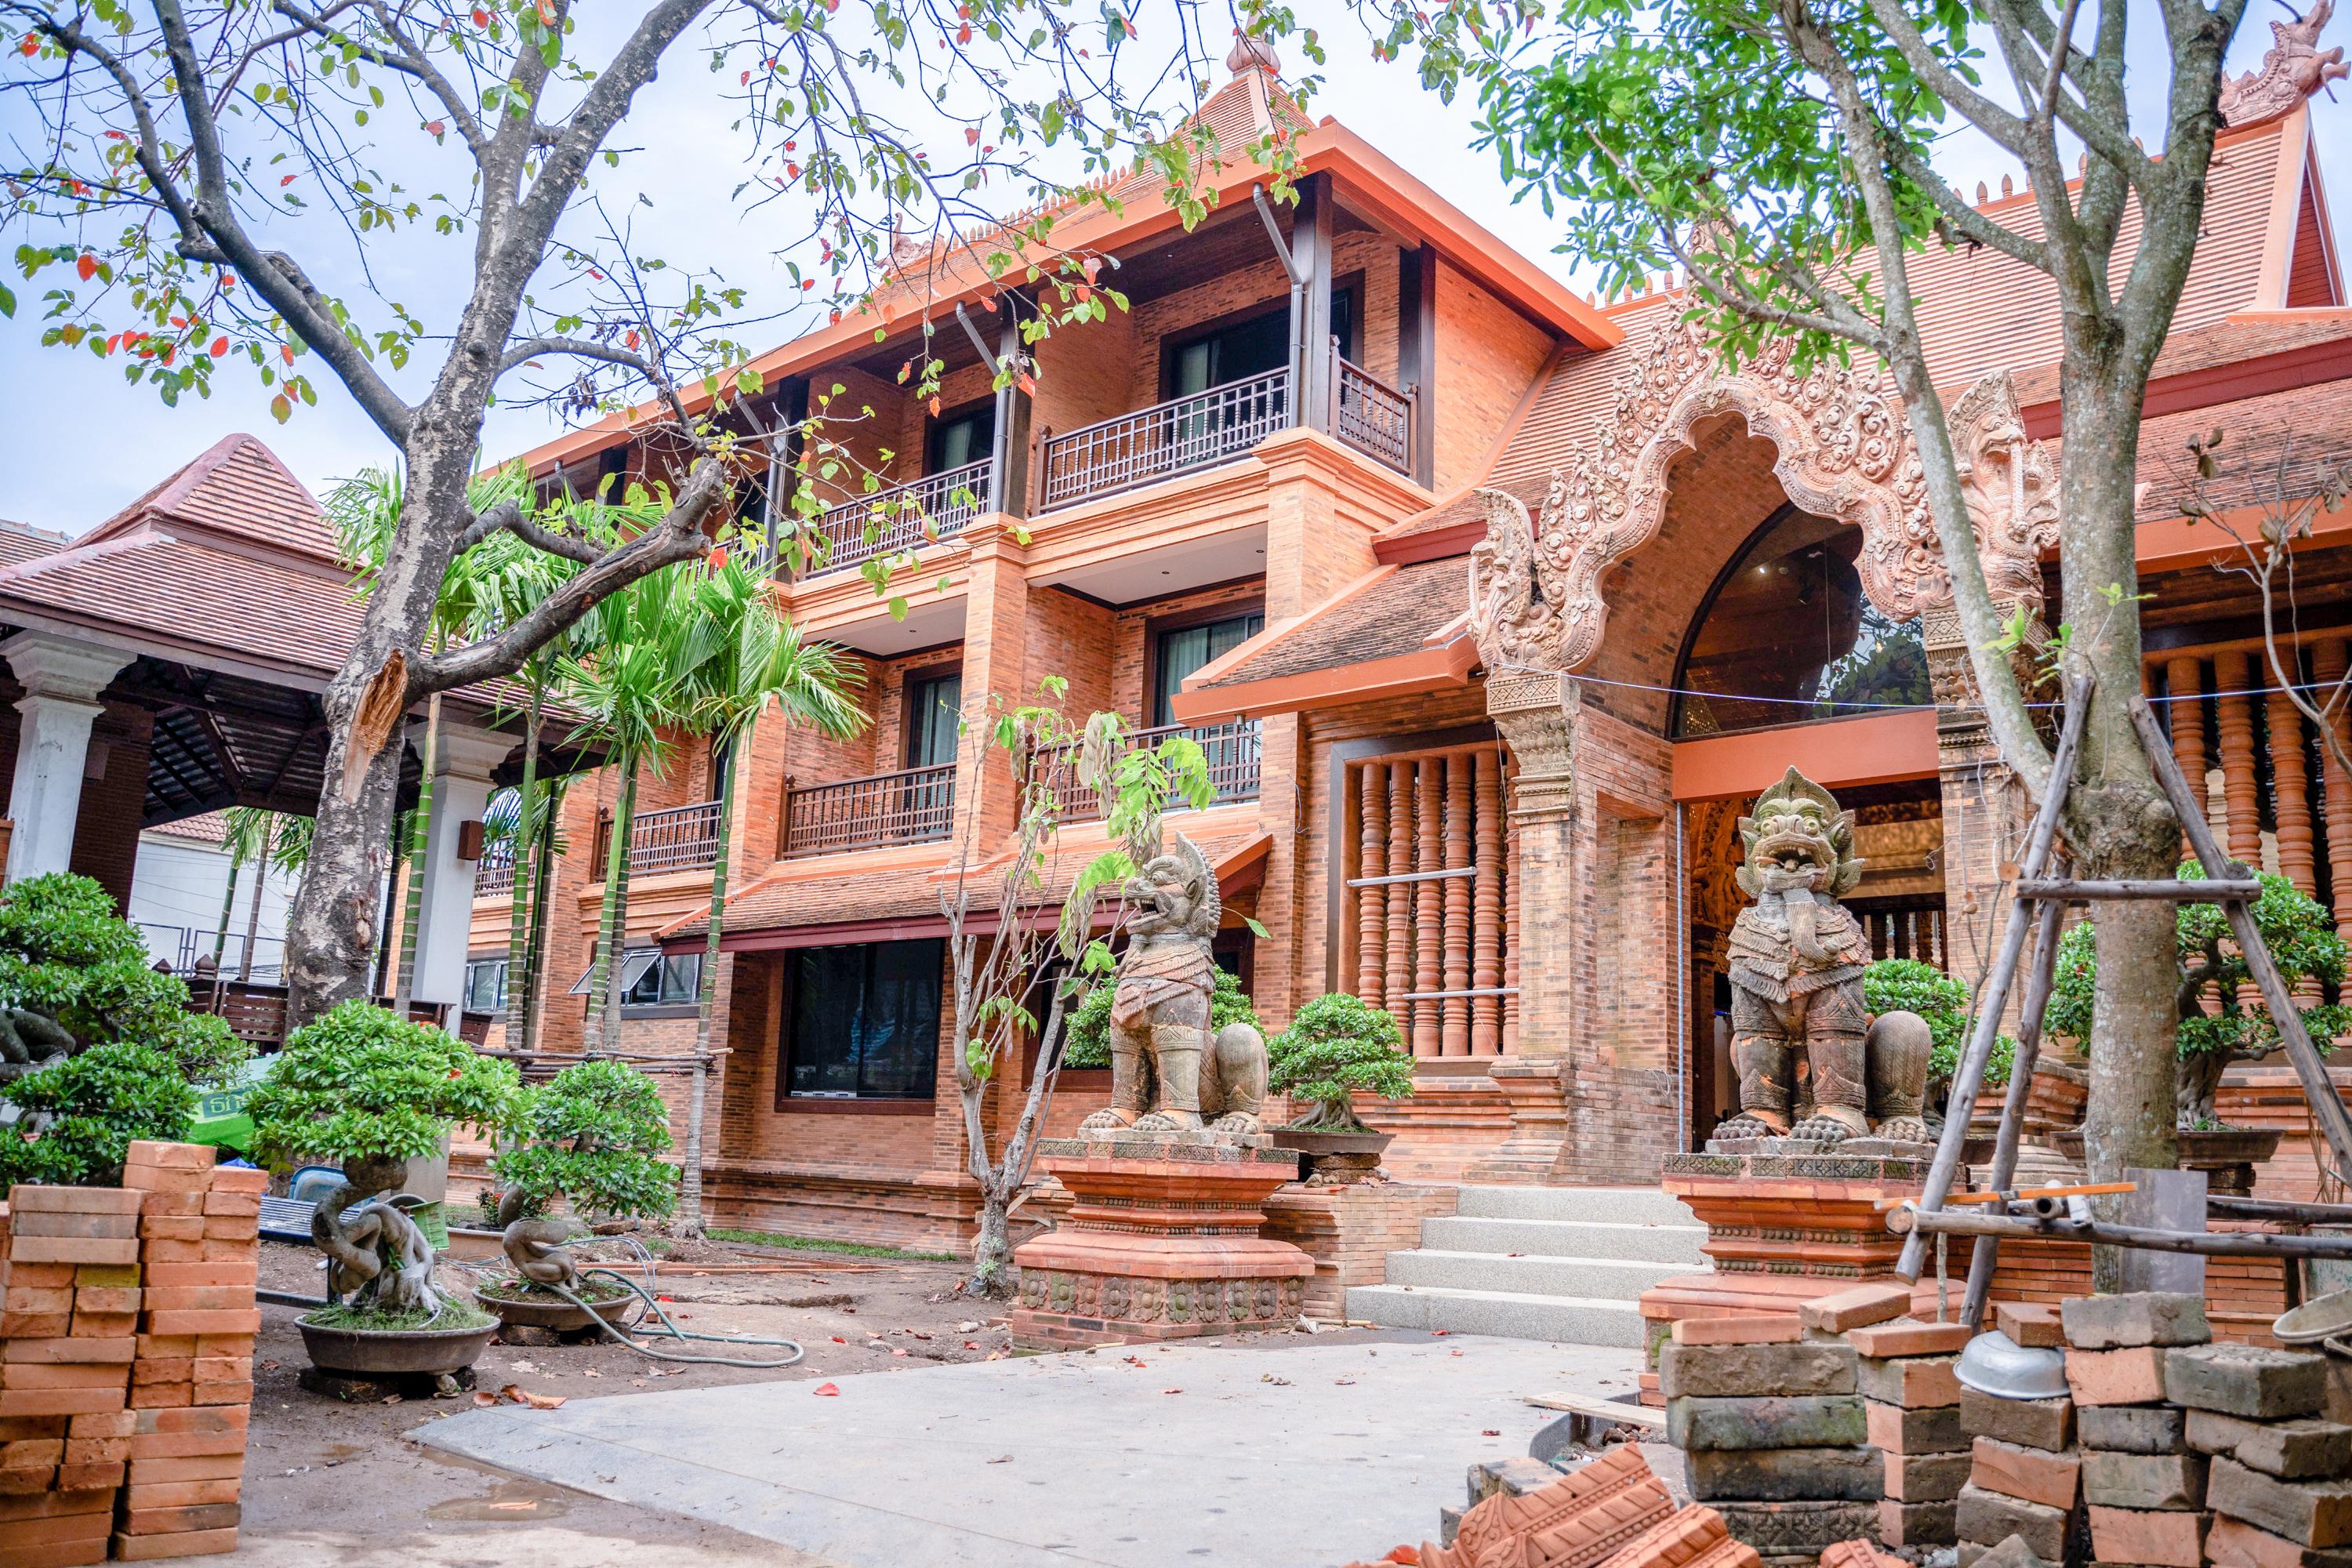 Phor Liang Meun Terracotta Arts - Sha Extra Plus Chiang Mai Dış mekan fotoğraf